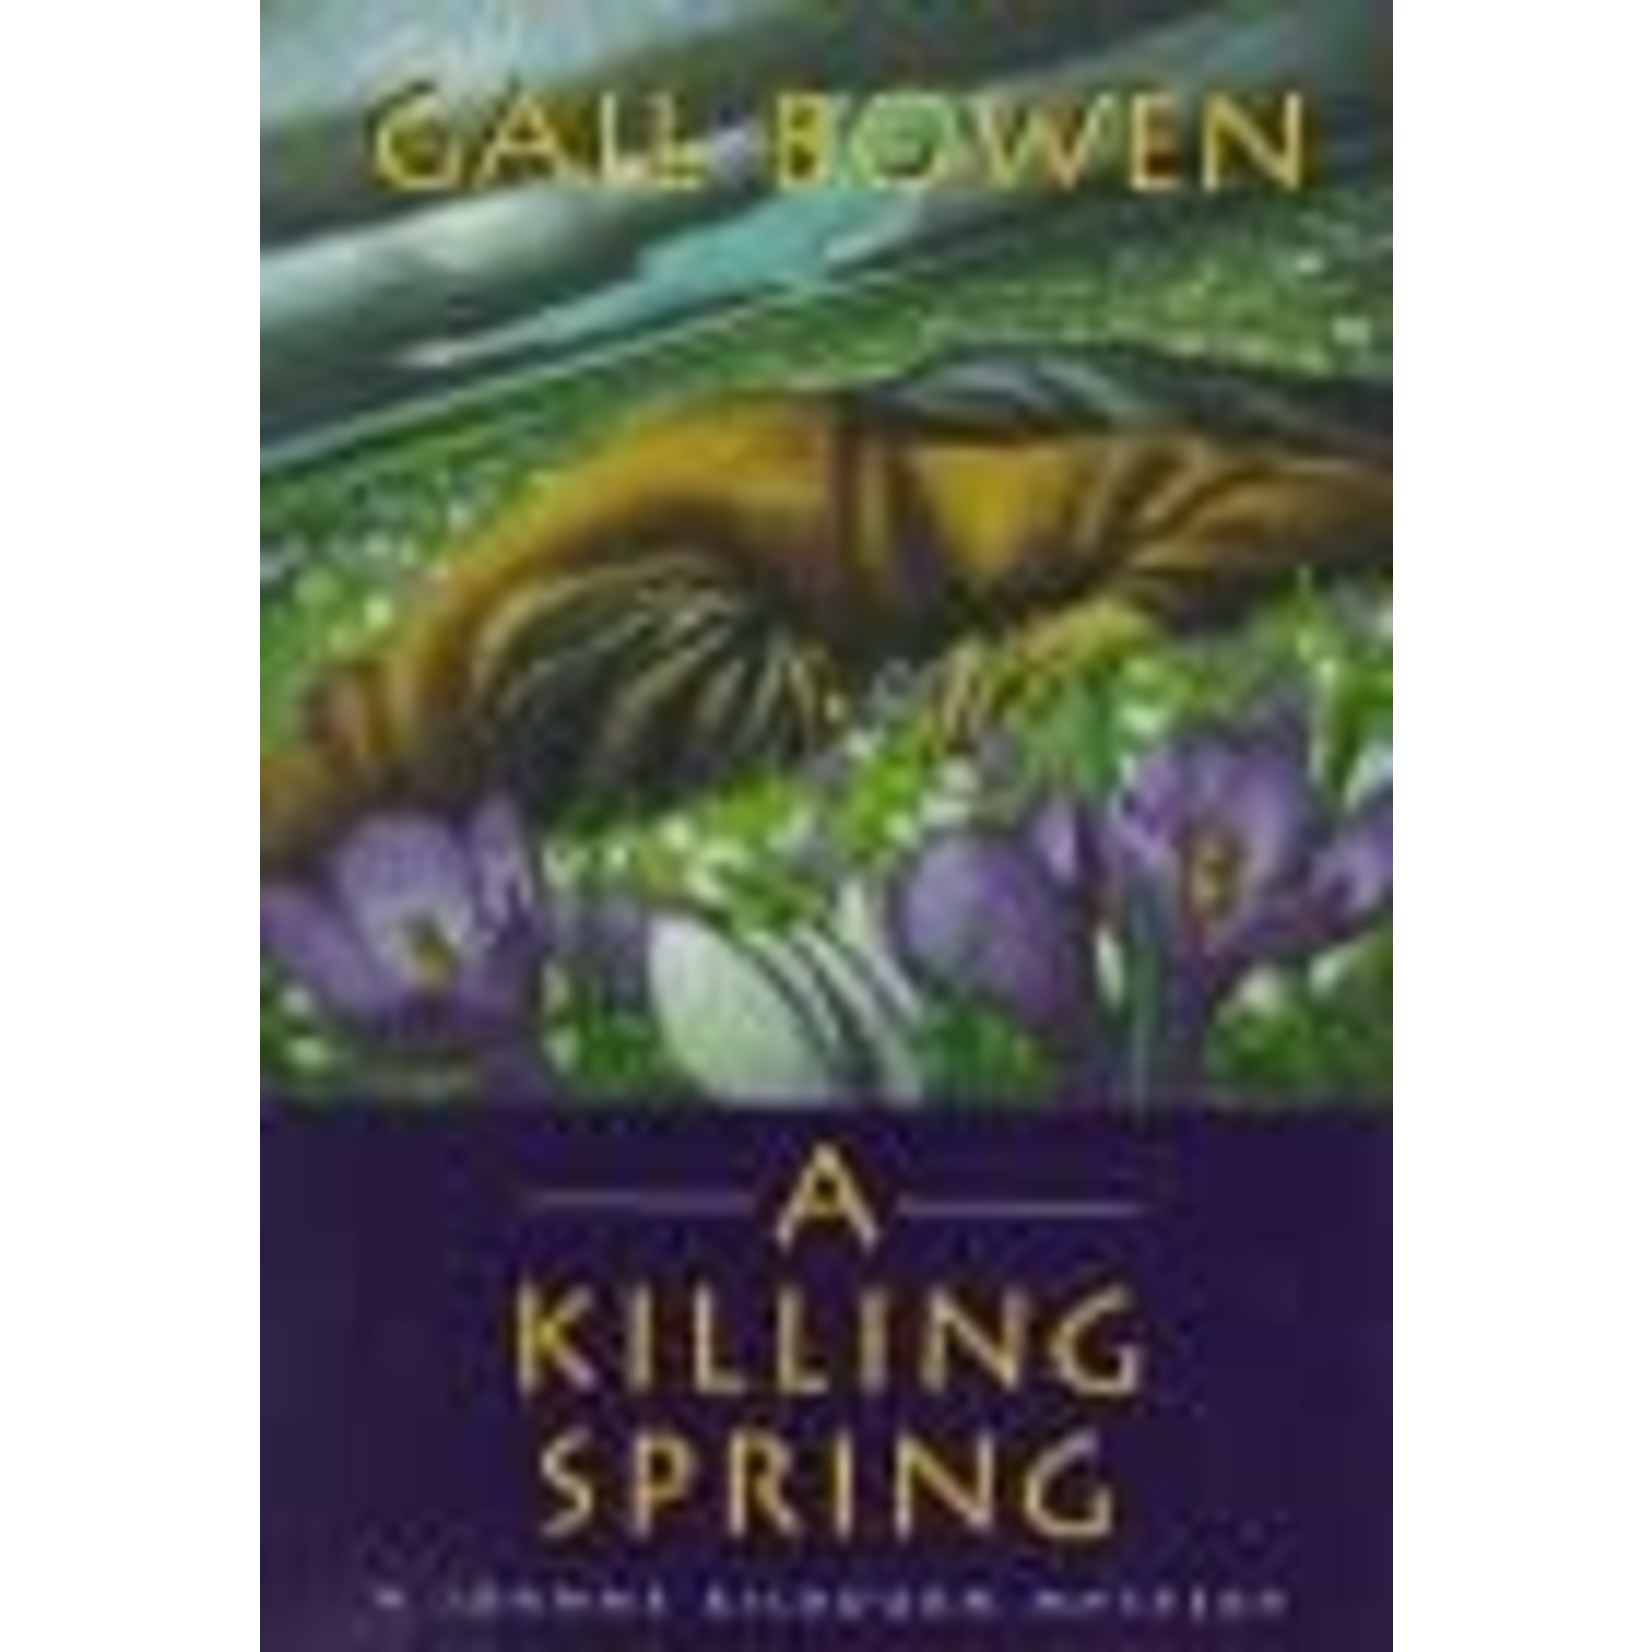 Bowen, Gail Bowen, Gail - A Killing Spring (A Joanne Kilbourn Mystery #5)